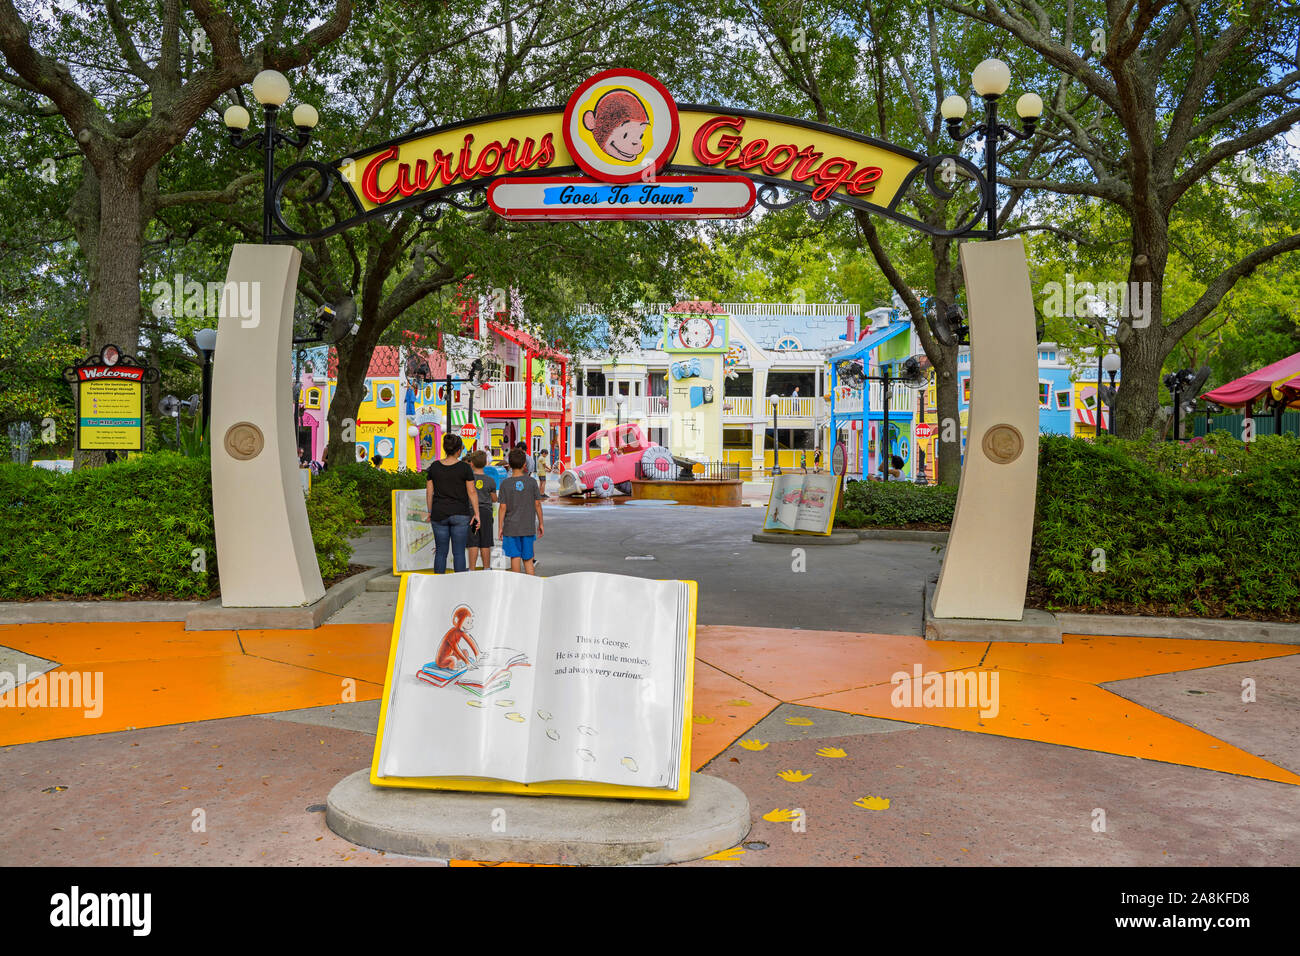 Eingang zu den neugierigen George Spielbereich für Kinder, Neugierig George geht in die Stadt, Universal Studios, Orlando, Florida, USA Stockfoto